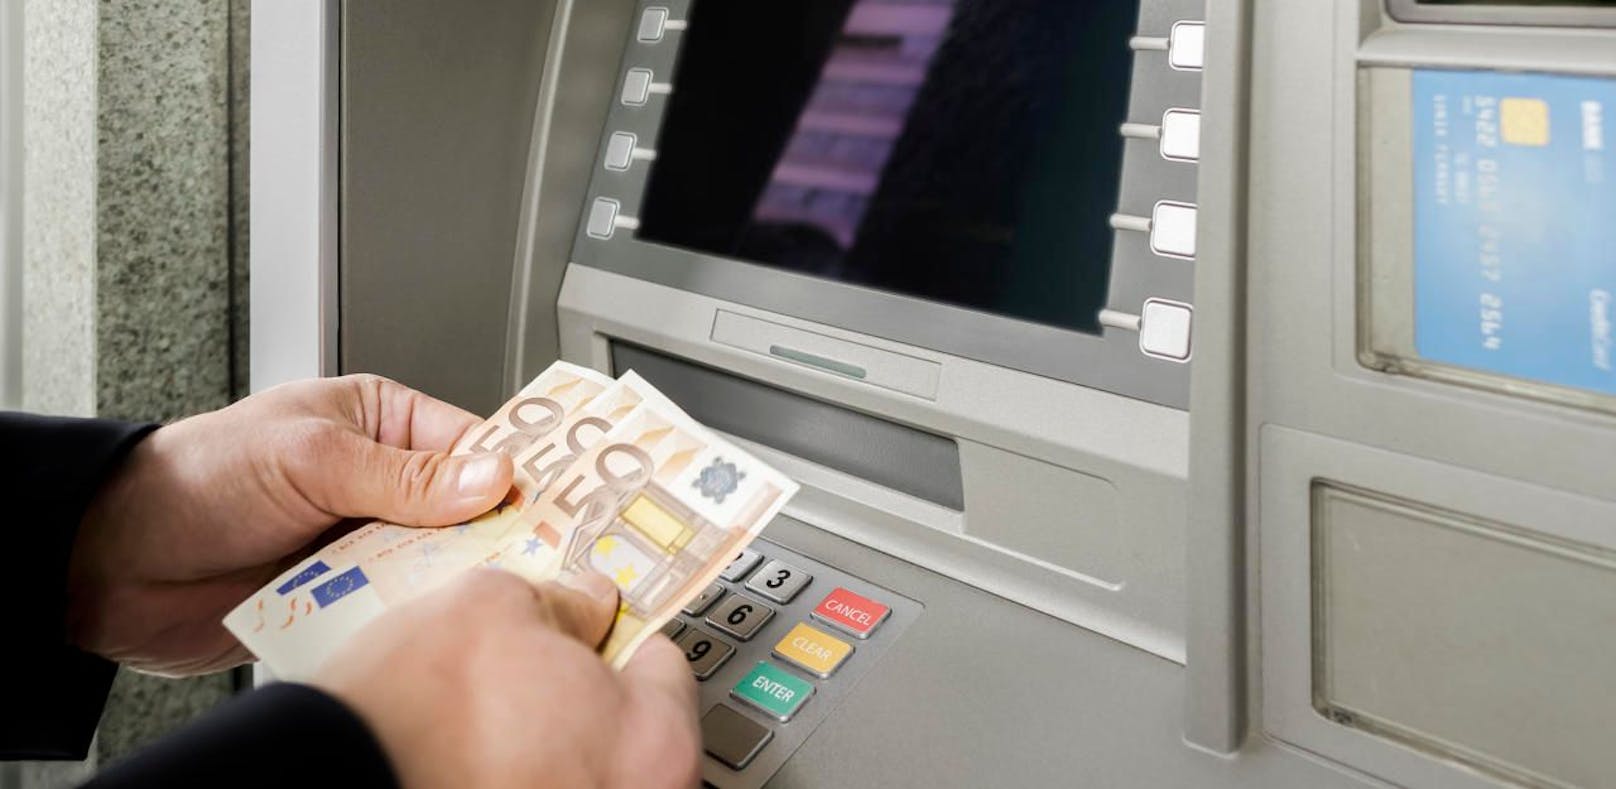 Bankomat spuckte 50er- statt 20er-Euronoten aus.